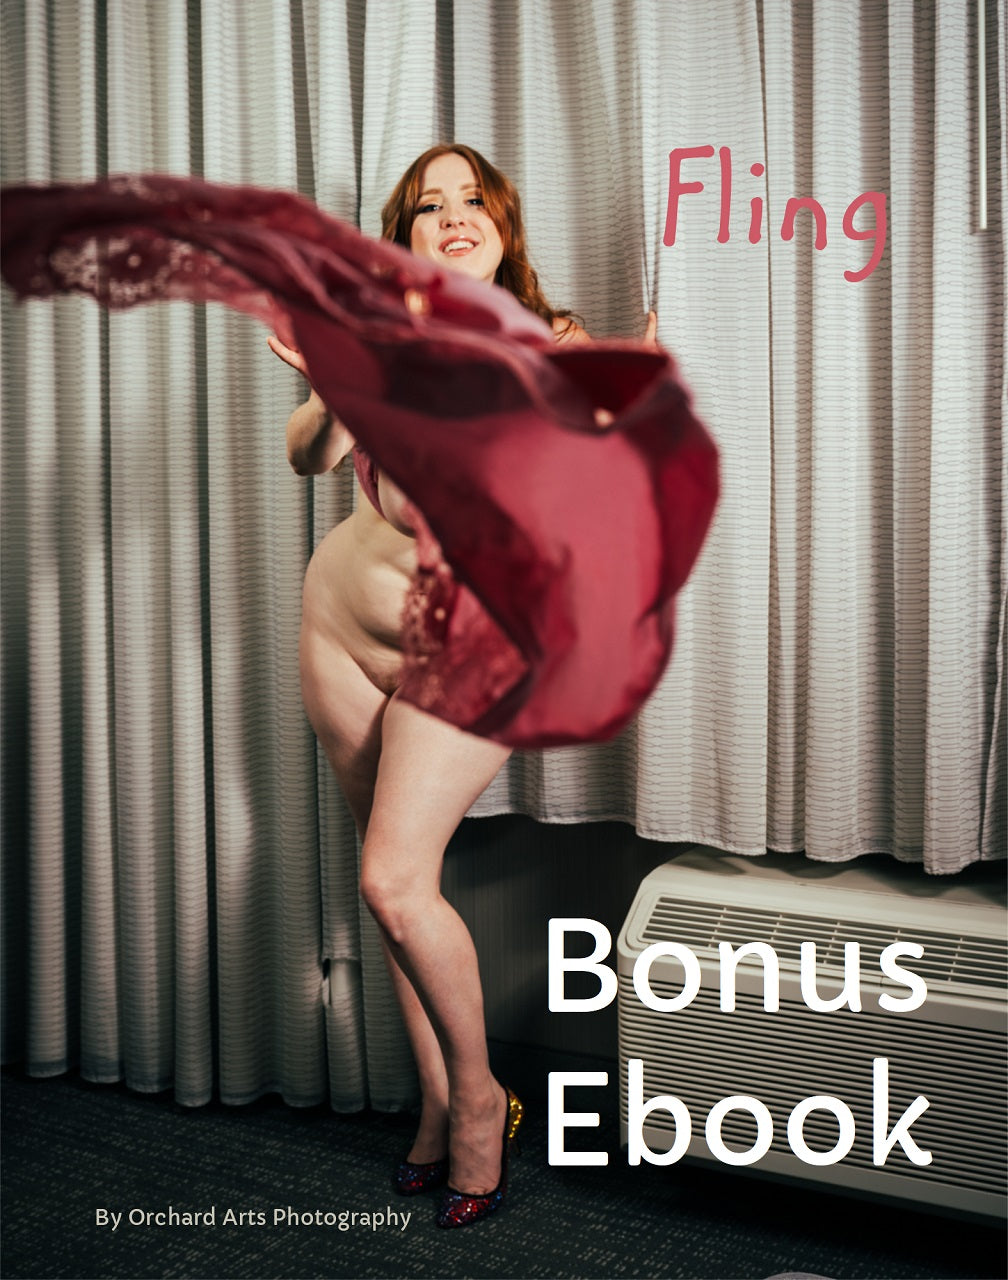 Fling Bonus eBook